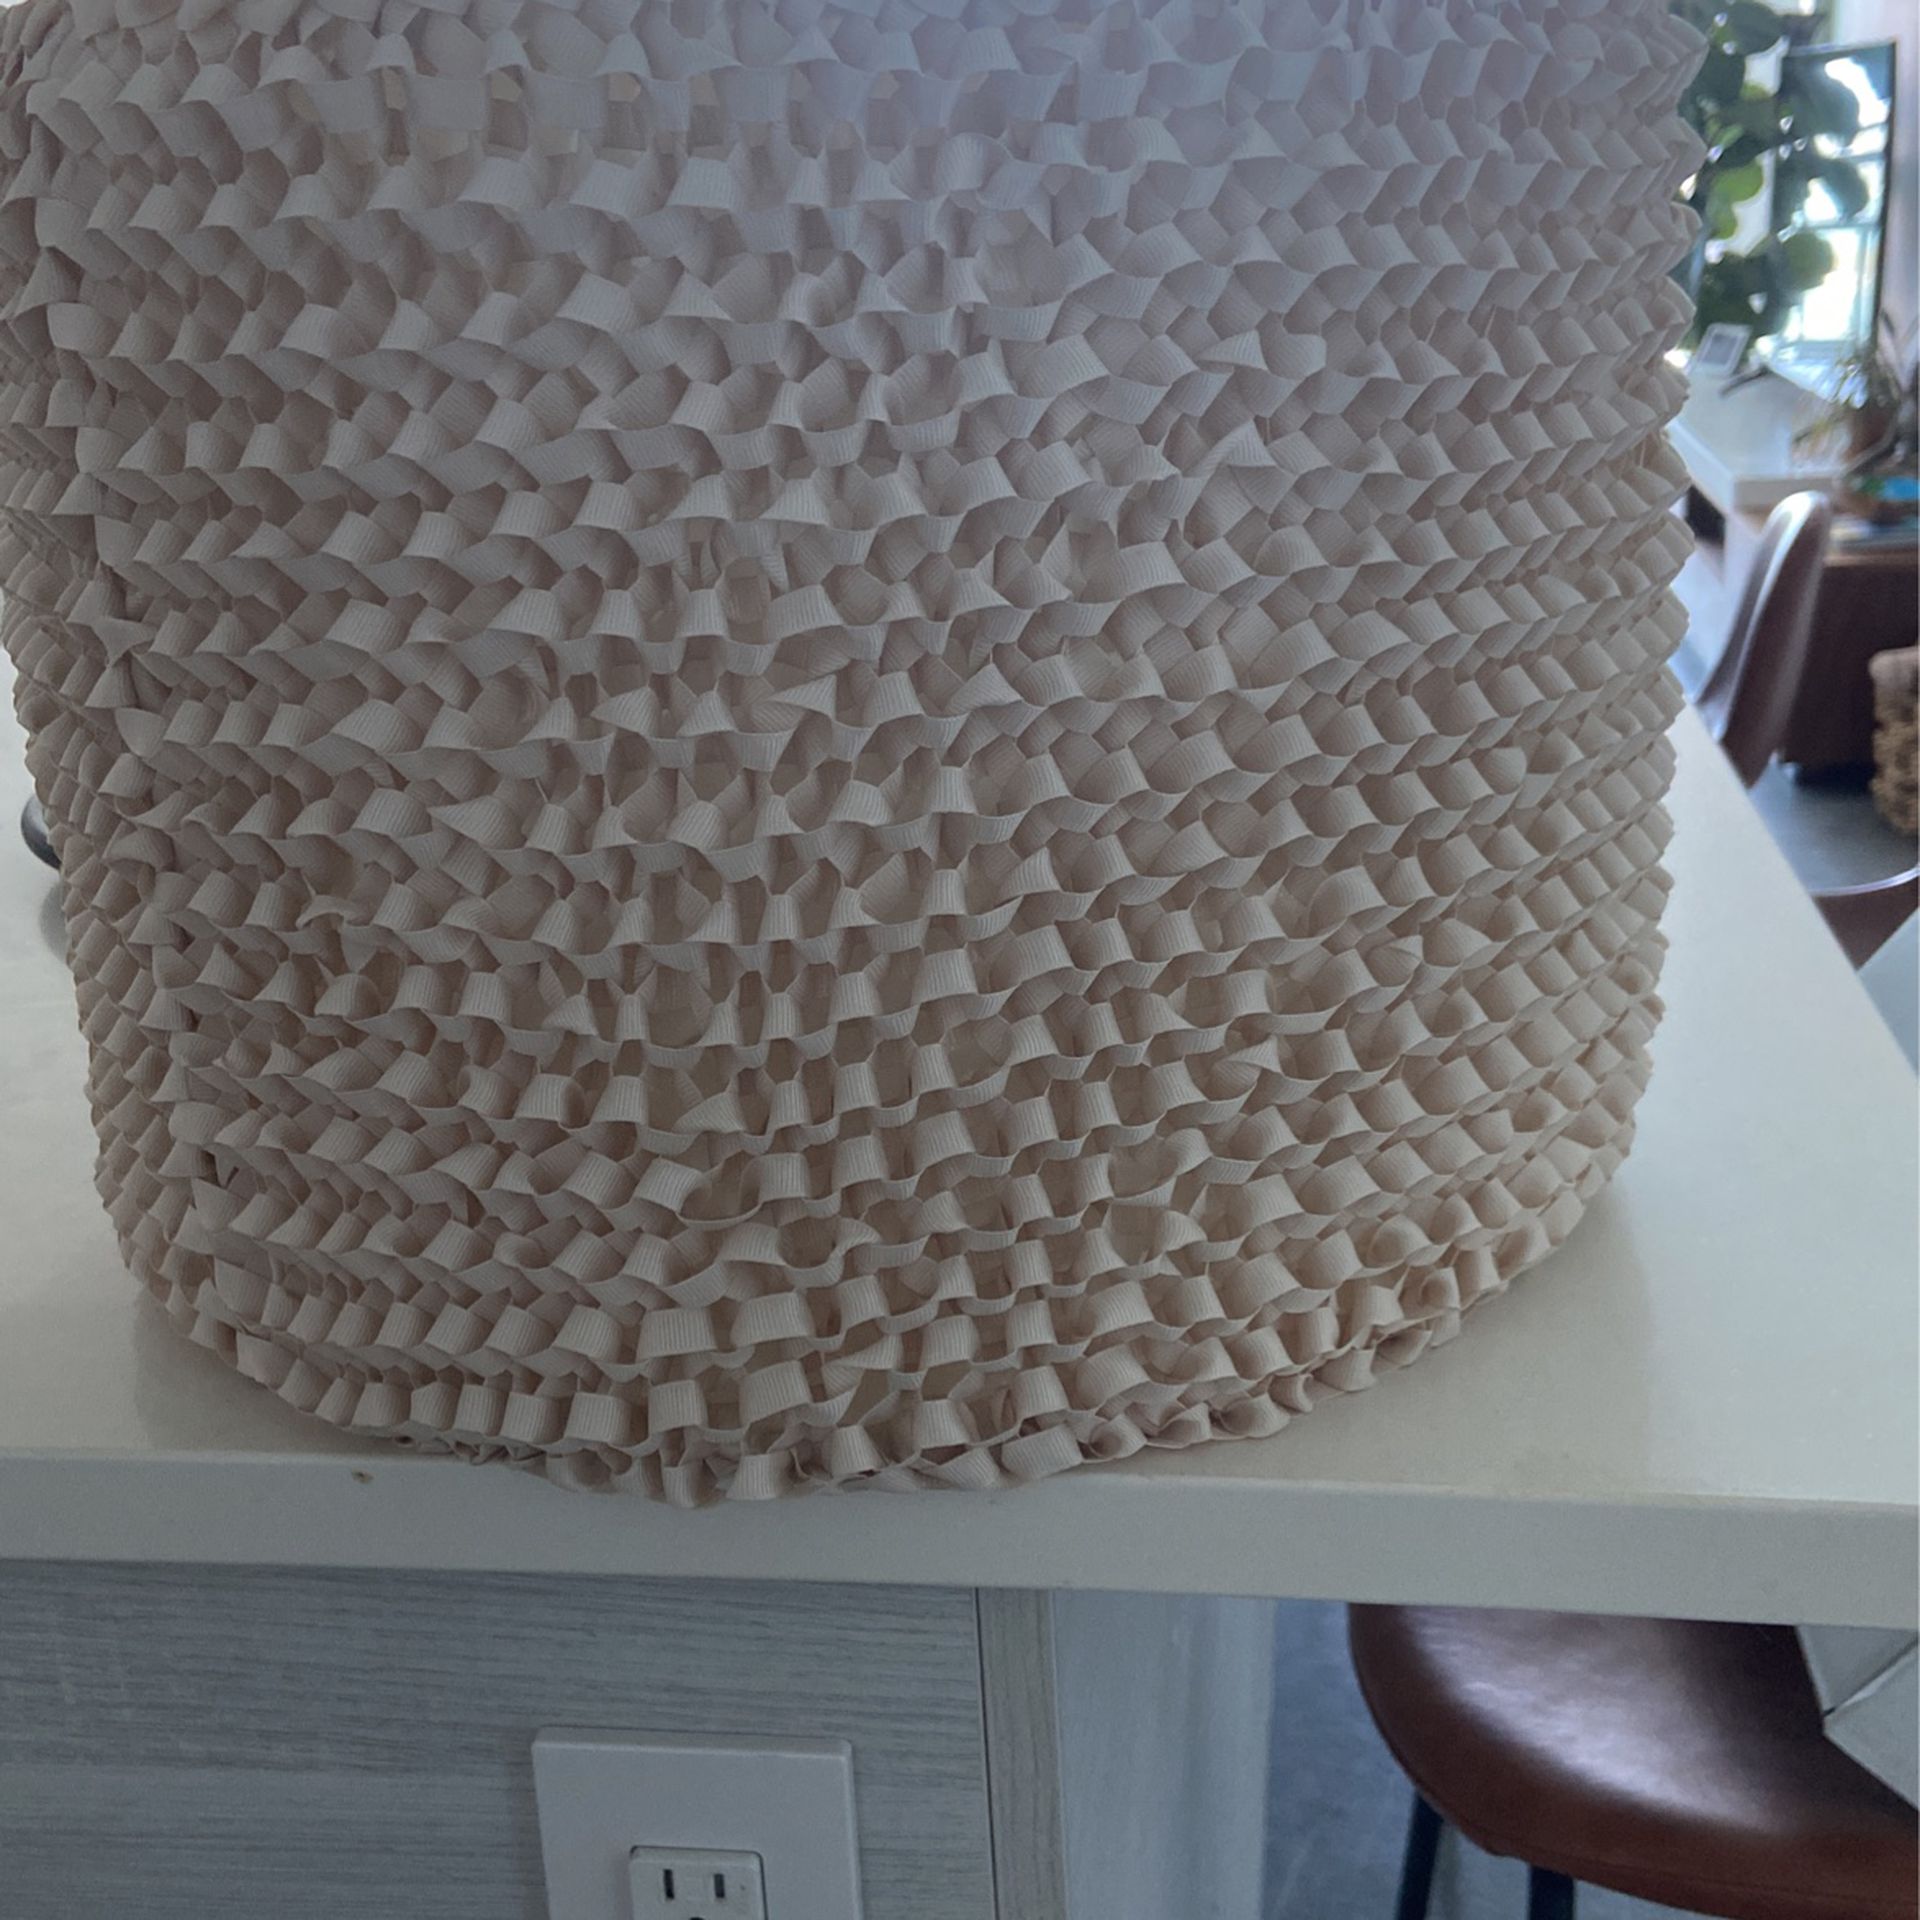 IKEA KNAPPA Lotus Flower Pendant Lamp for Sale in Miami, FL - OfferUp